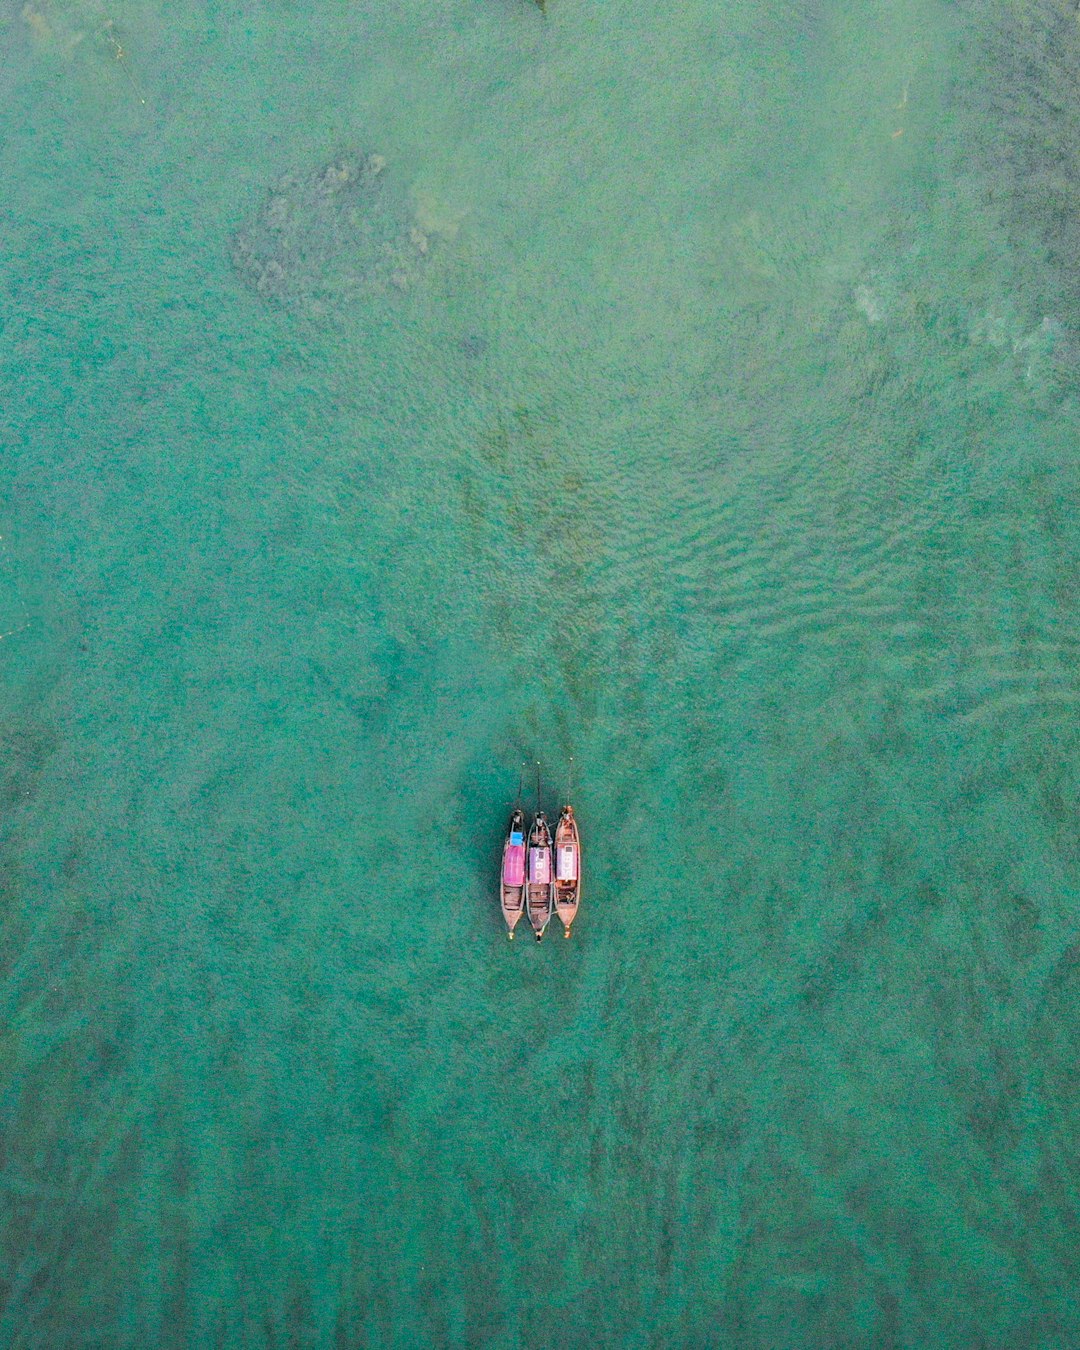 Ocean photo spot Krabi Phi Phi Islands